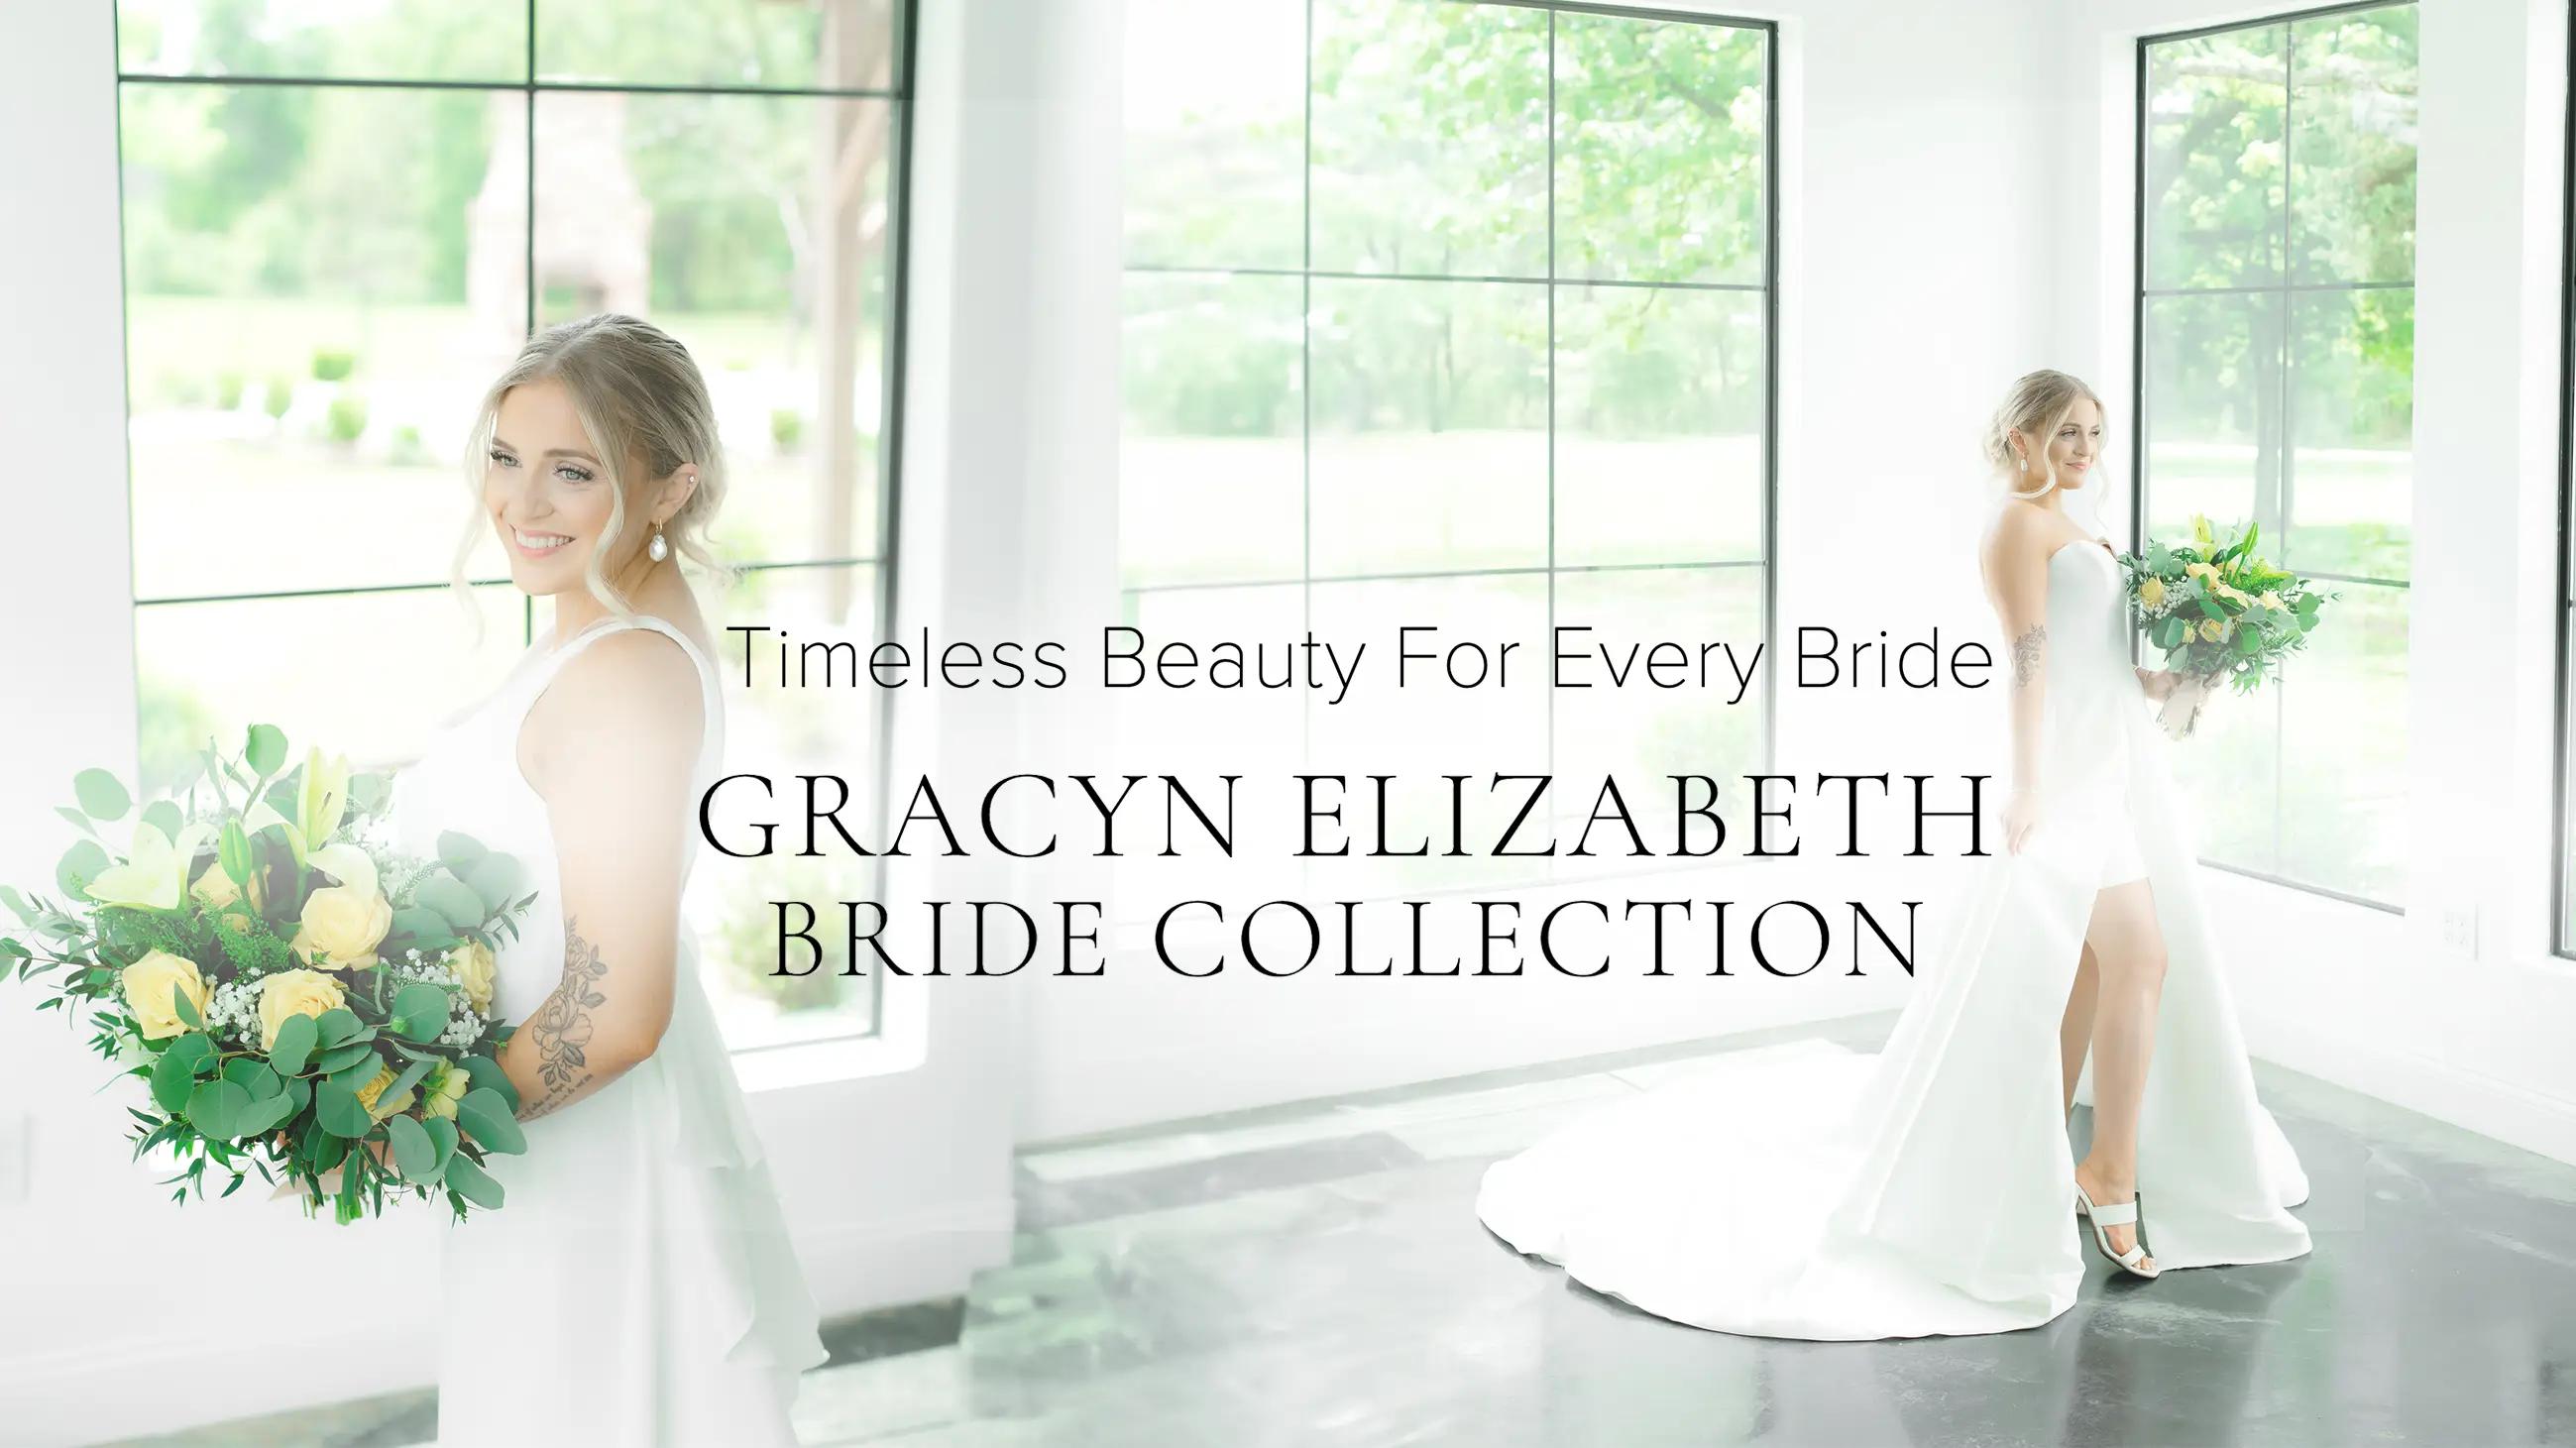 Gracyn Elizabeth Bride Collection